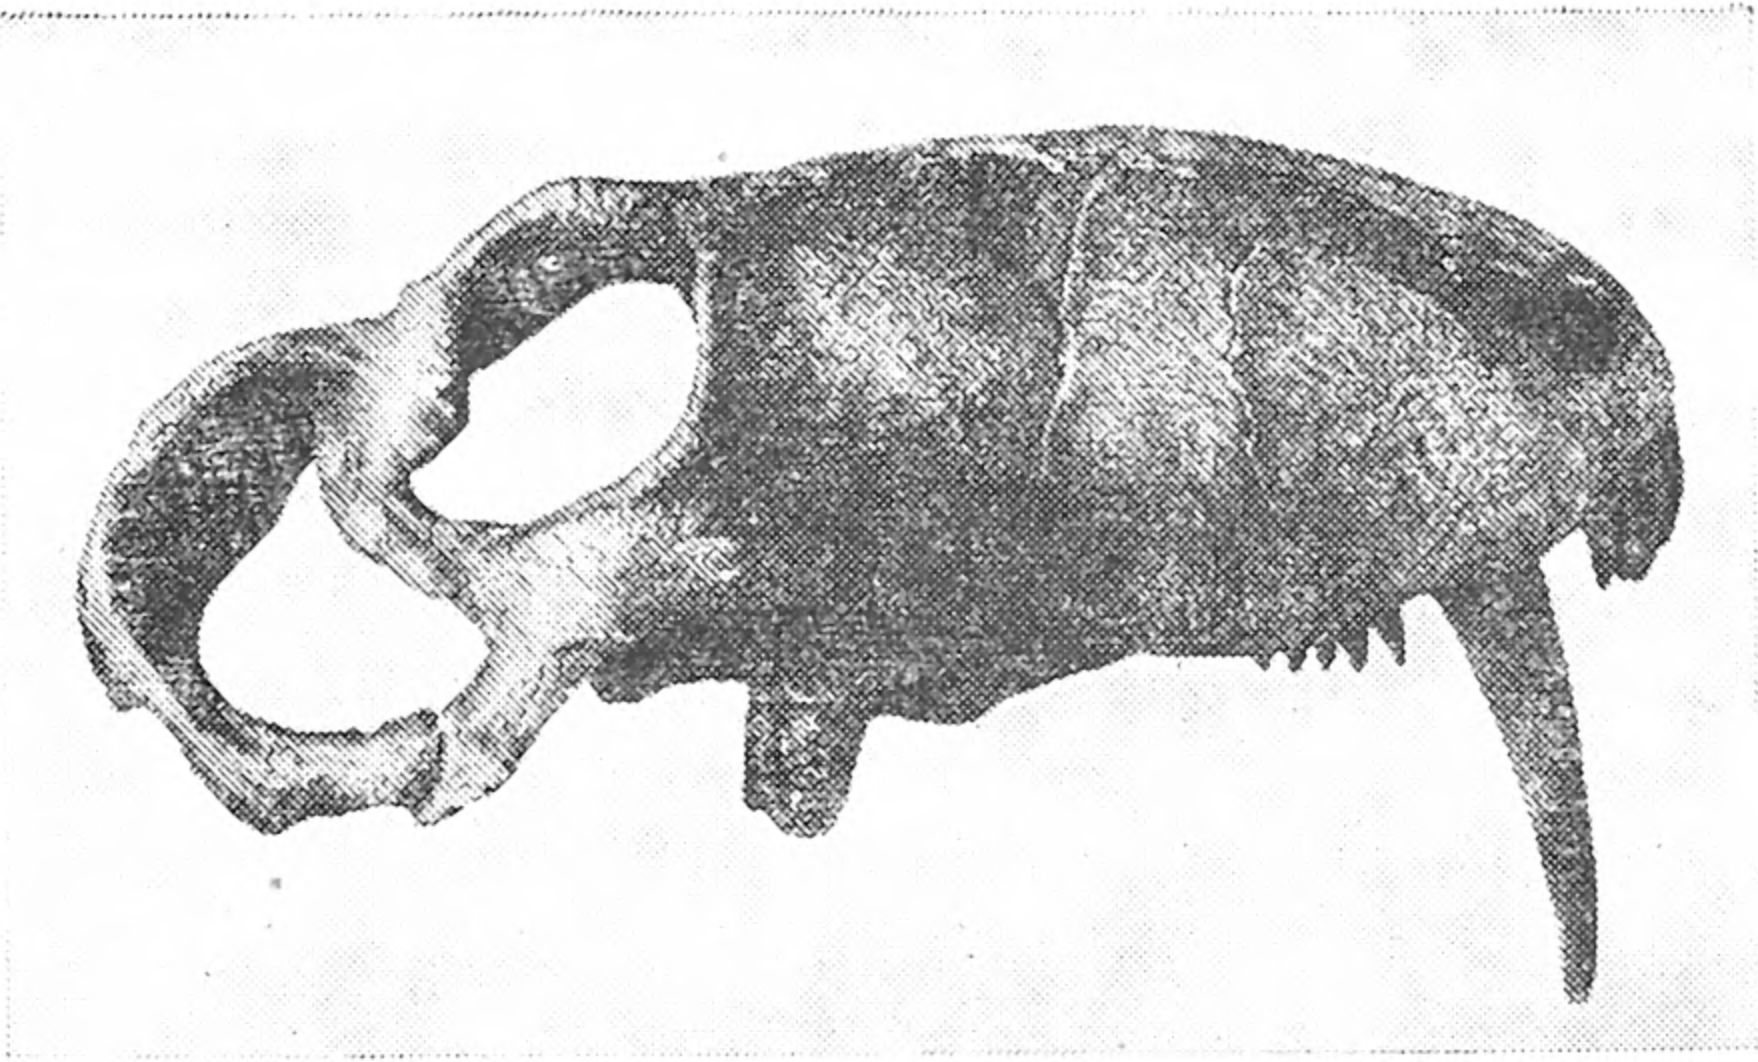 Реконструкция черепа зверообразного ивантозавра (названного в честь И.А. Ефремова)